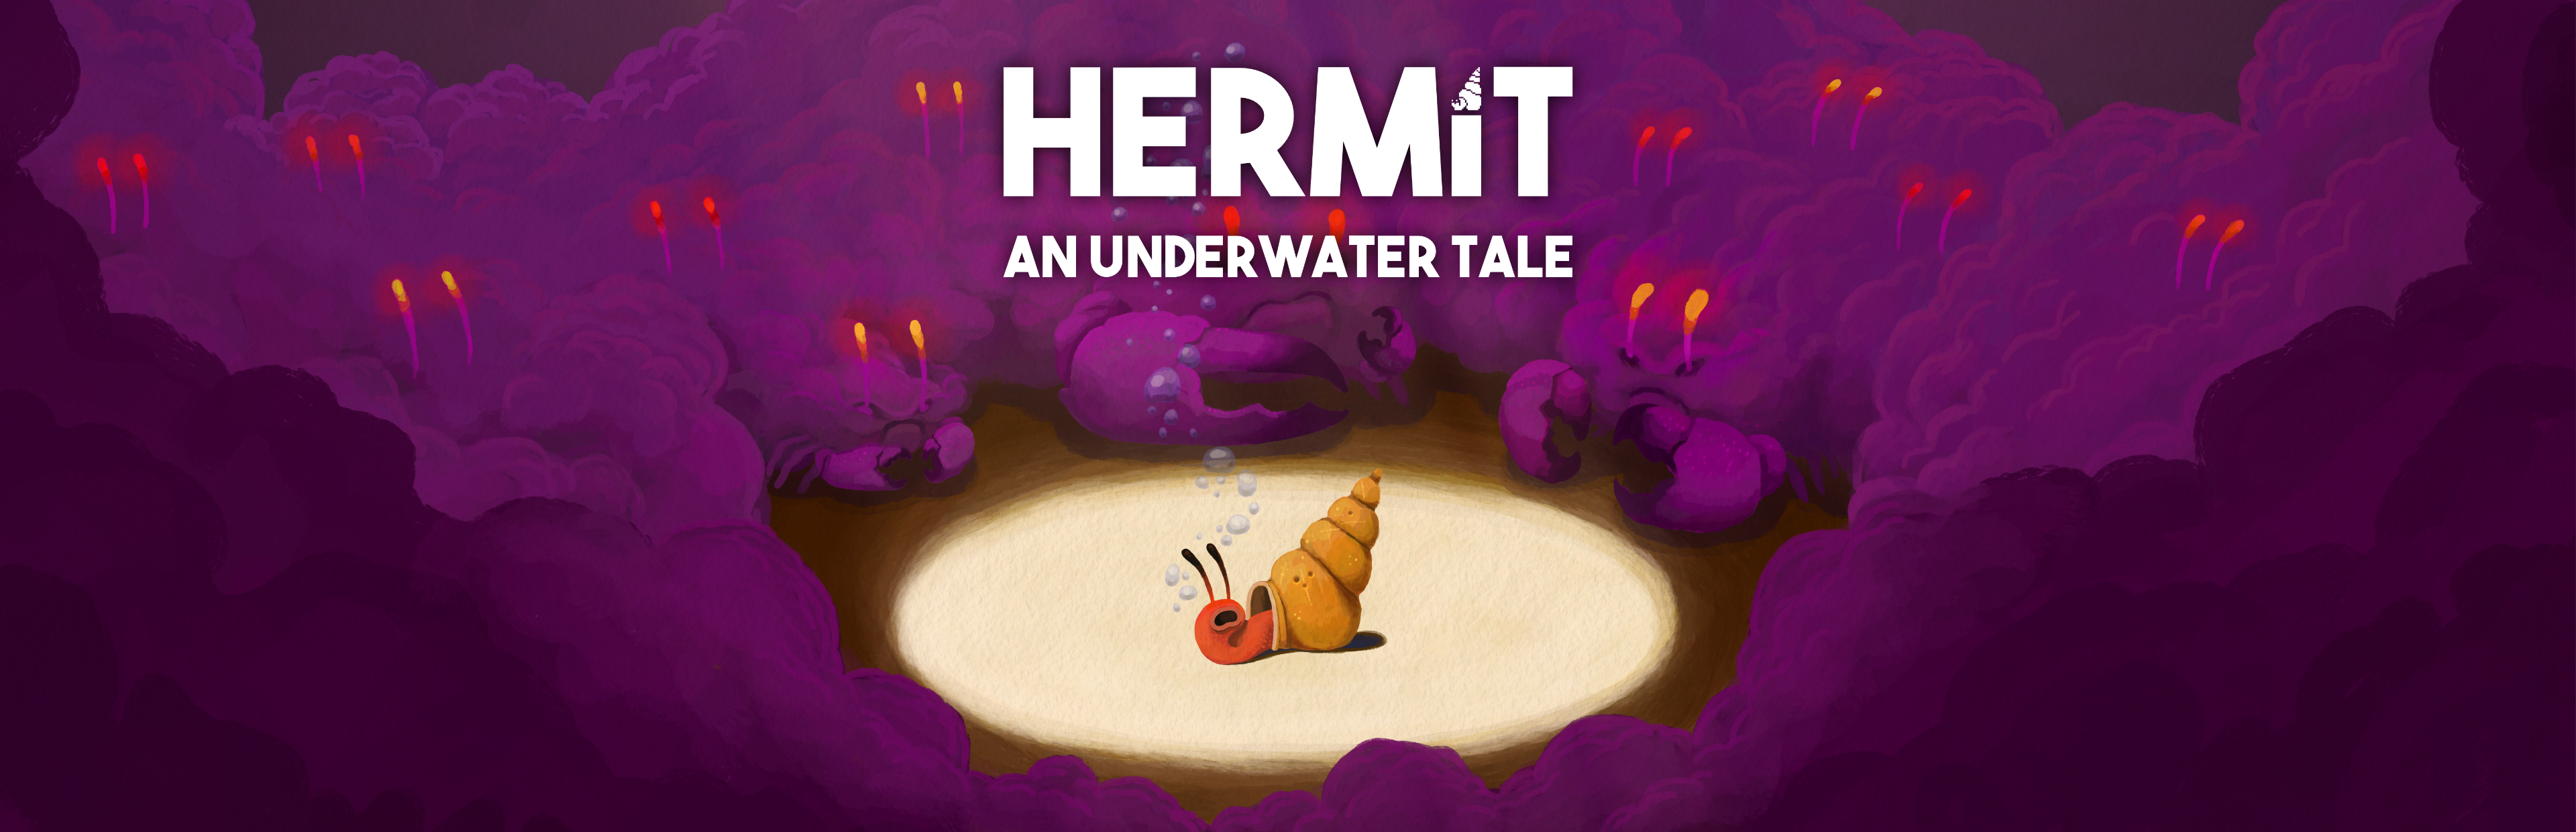 Hermit - an underwater tale